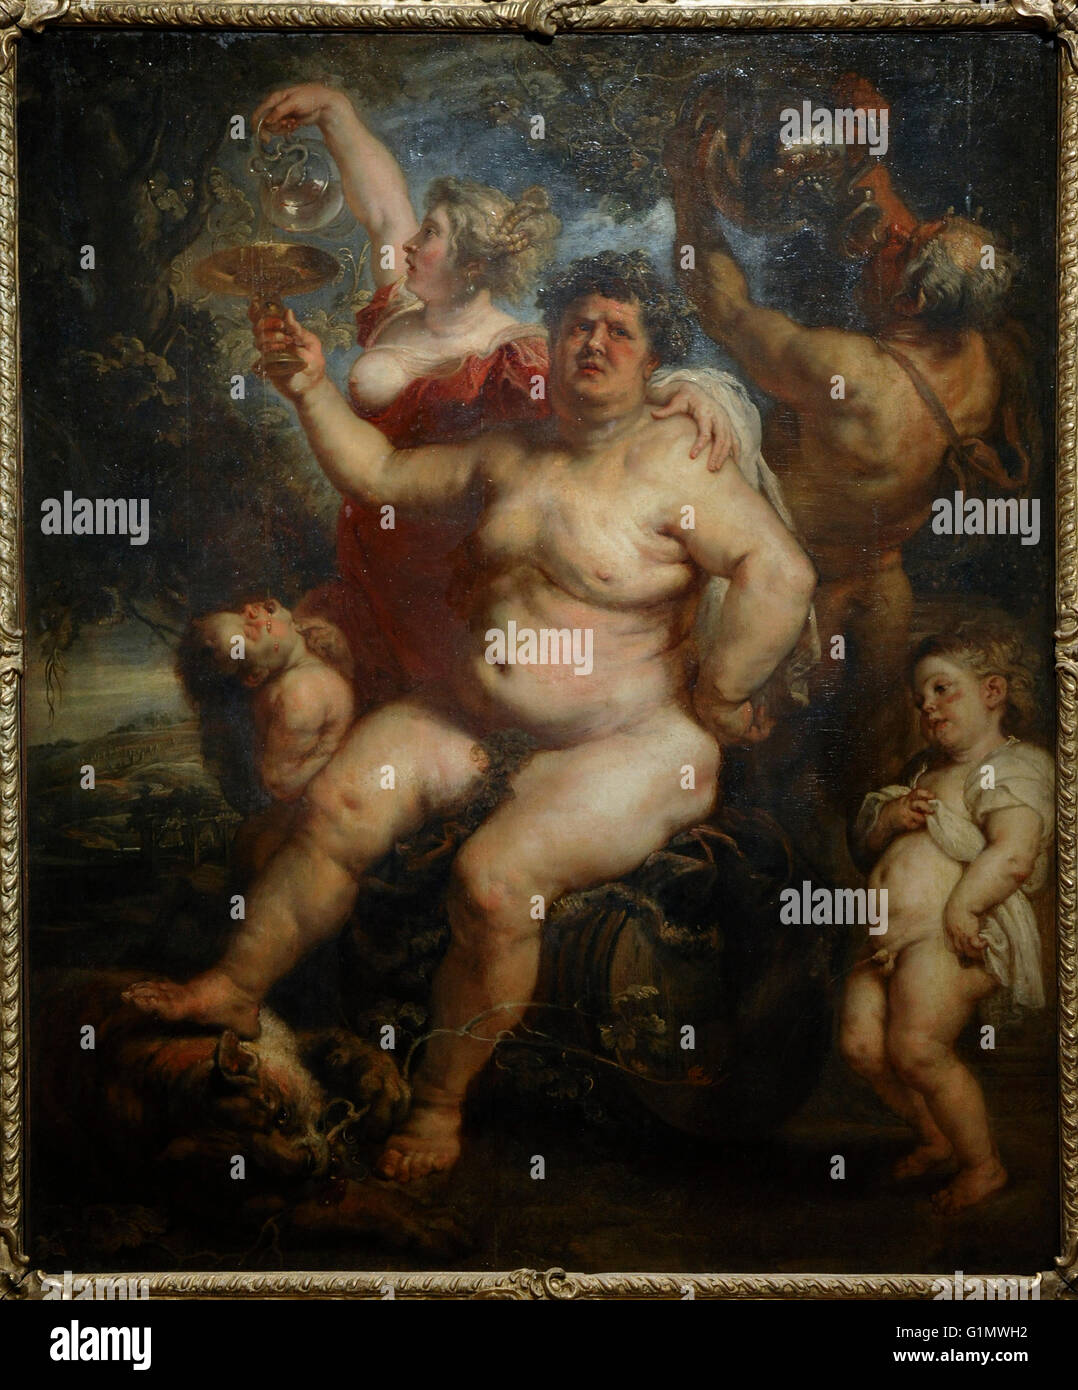 Peter Paul Rubens (1577-1640). Peintre baroque flamand. Bacchus, 1638-40. Huile sur toile. Le Musée de l'Ermitage. Saint Petersburg. La Russie. Banque D'Images